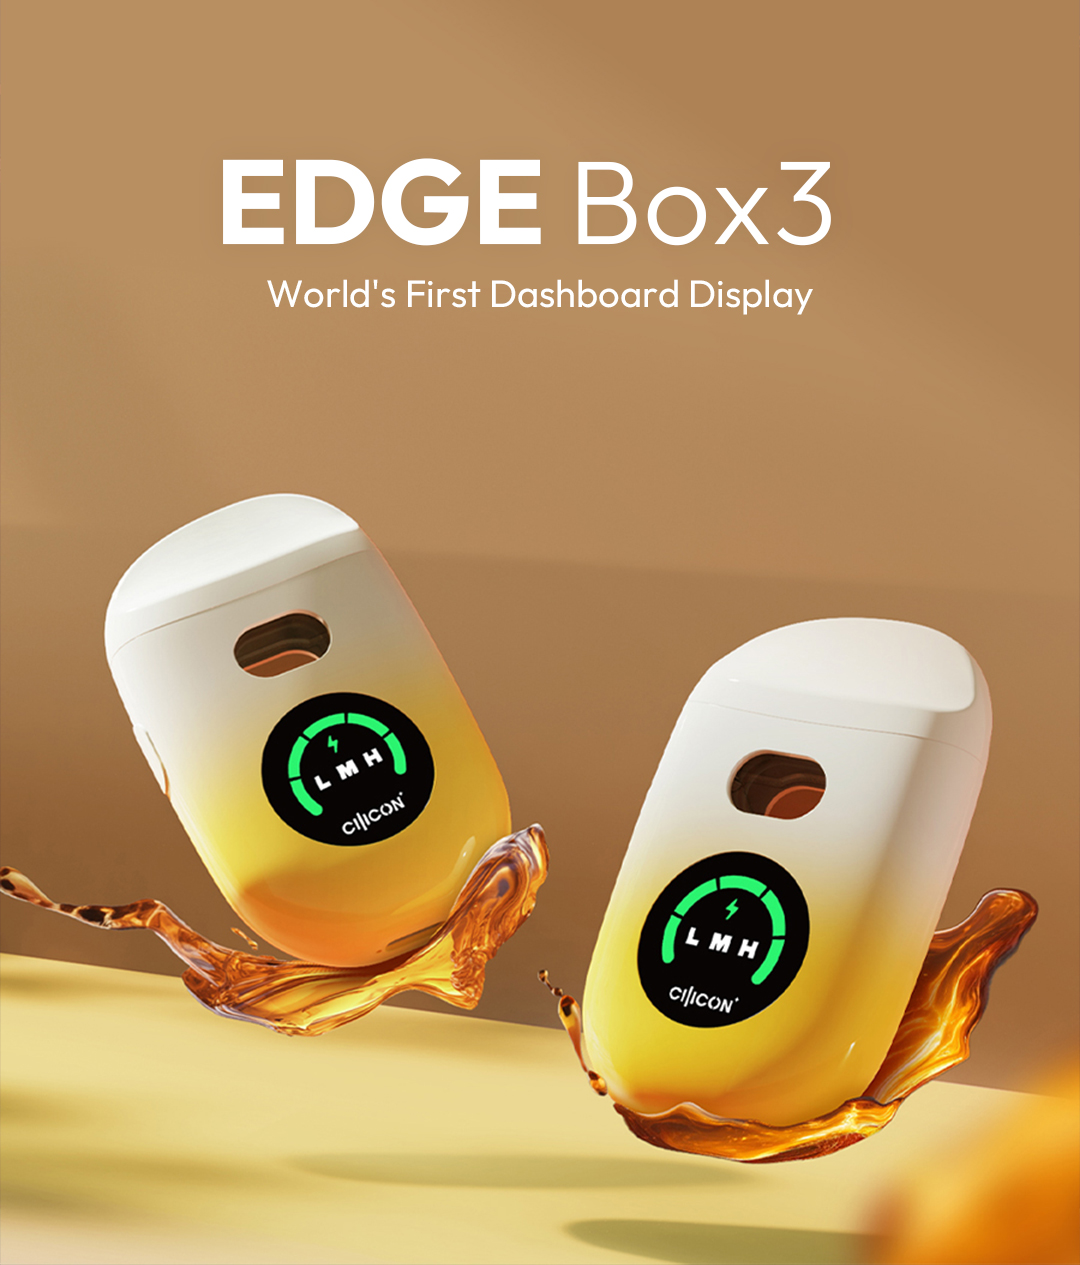 EDGE Box3